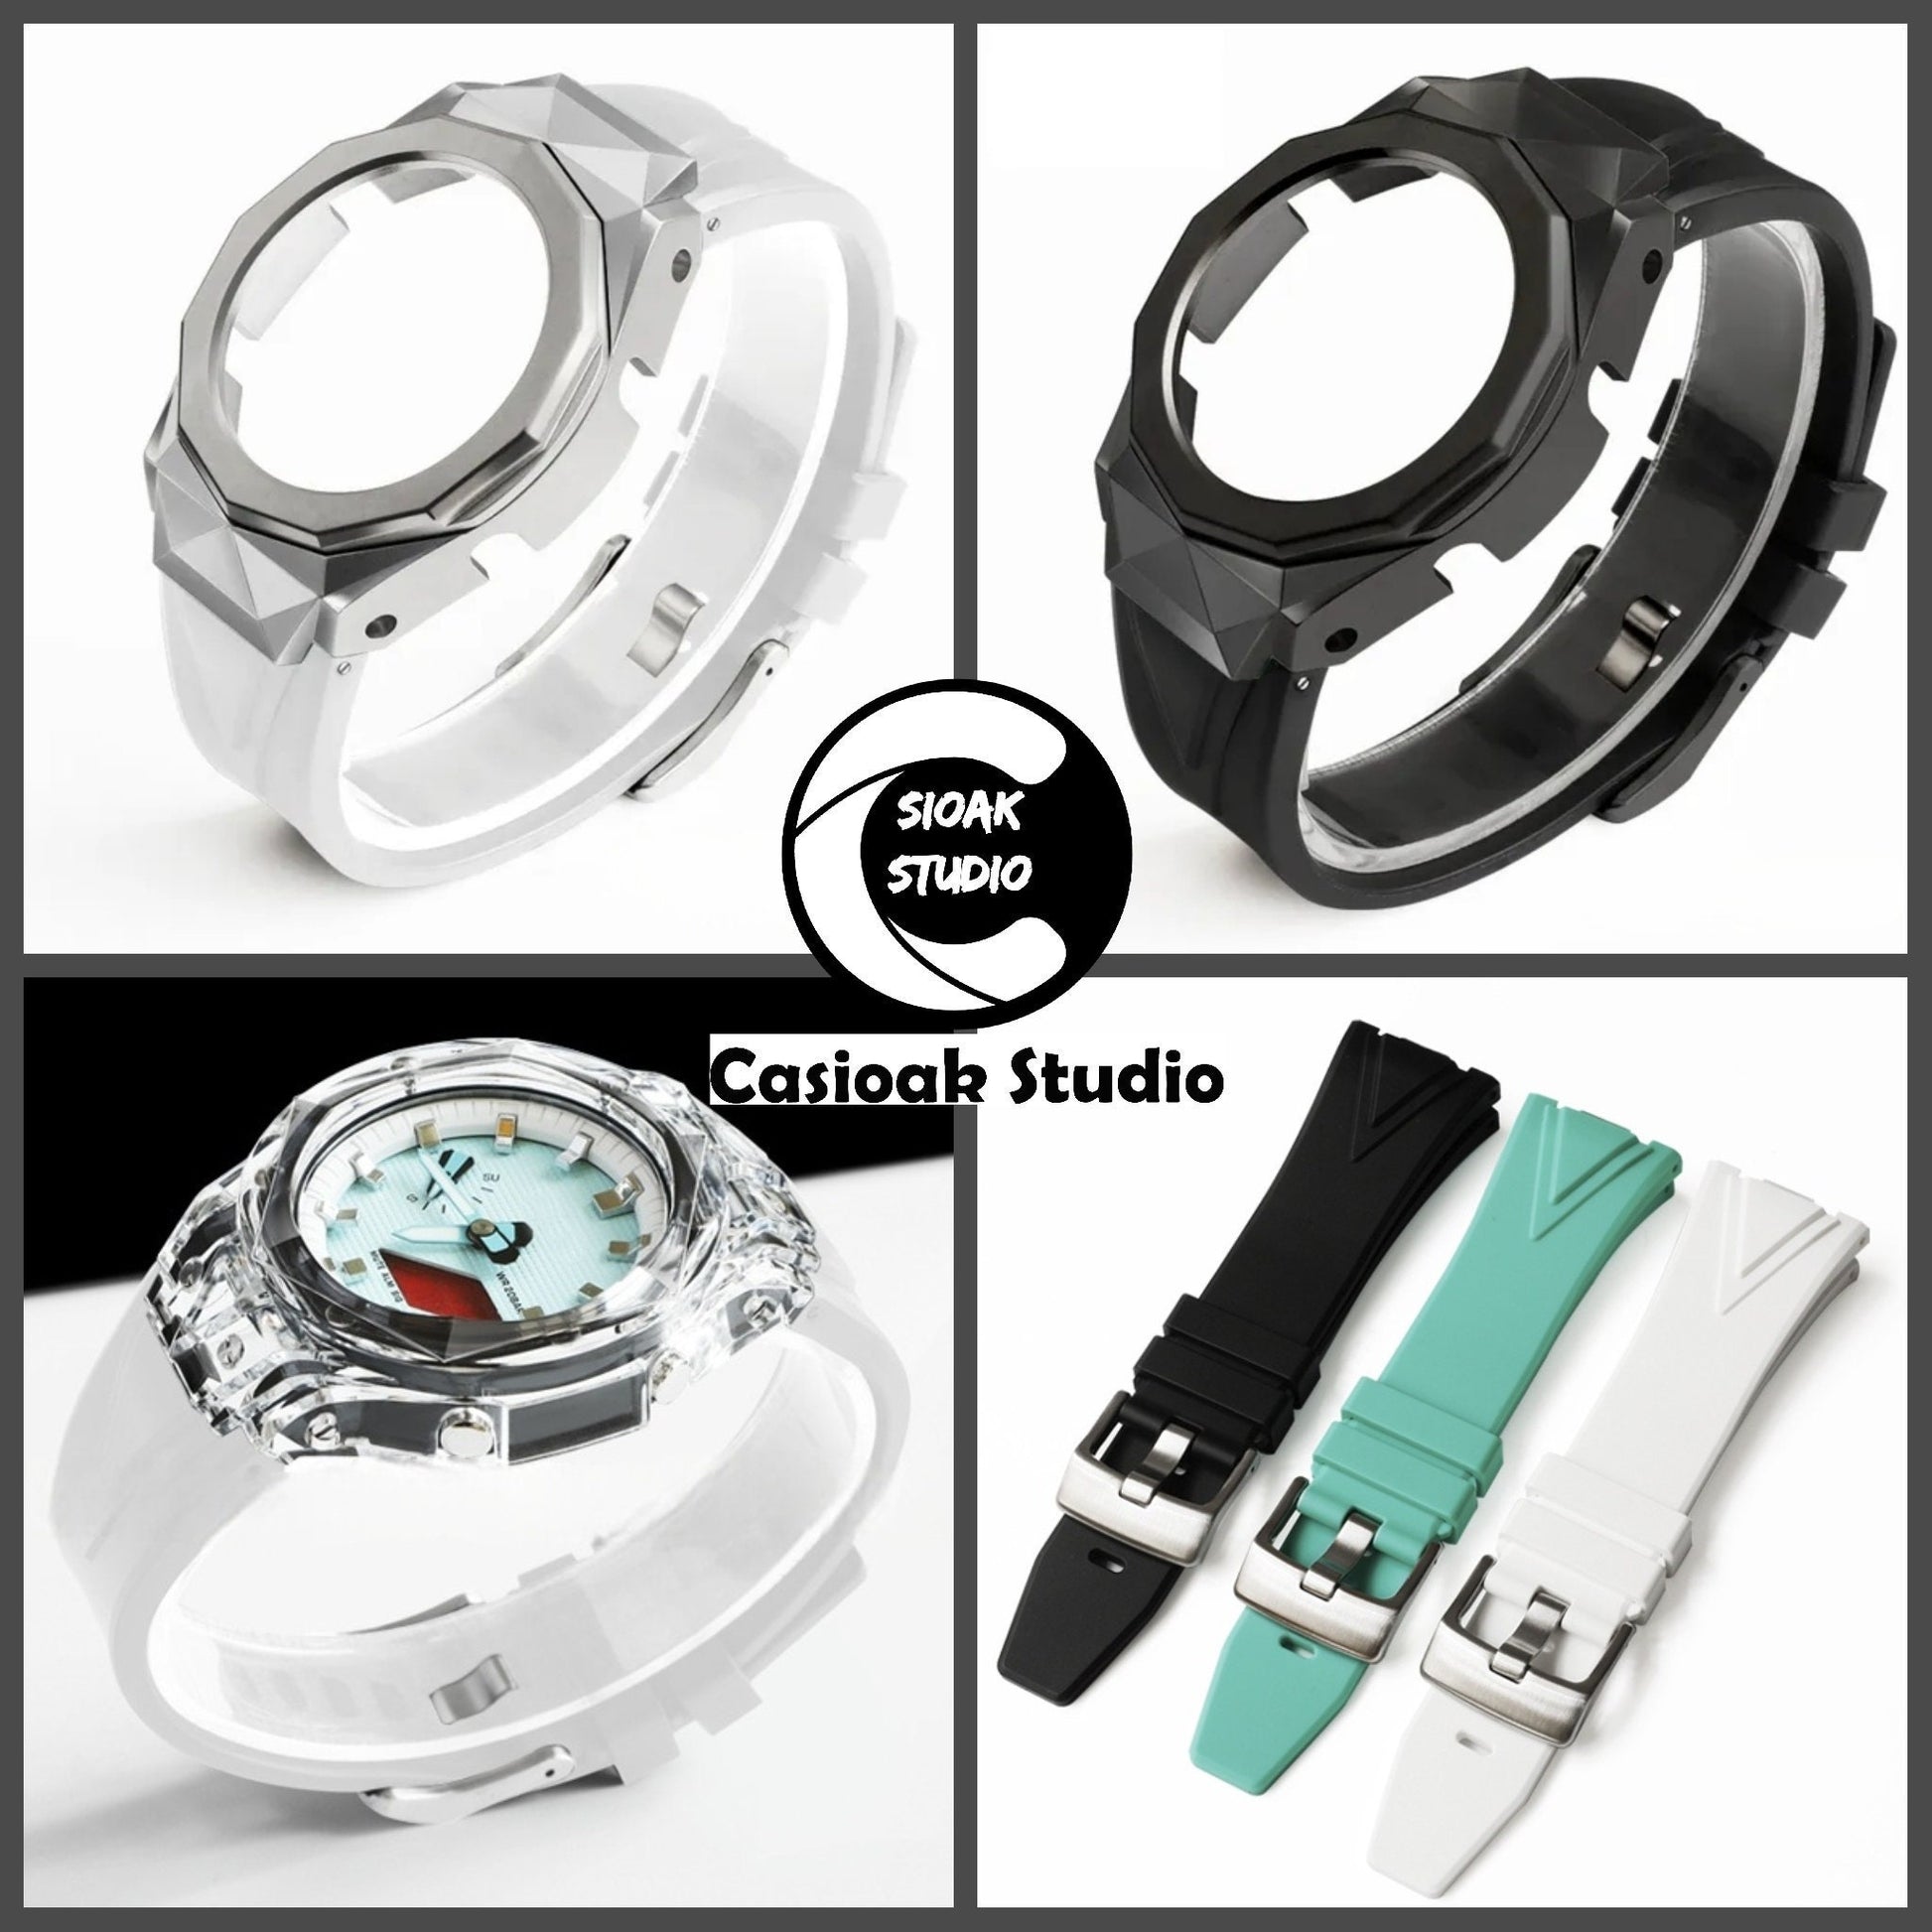 Casioak Mod Watch Hb Transparent Case White Strap Silver Time Mark Bling Dial 44mm      Him - Casioak Studio